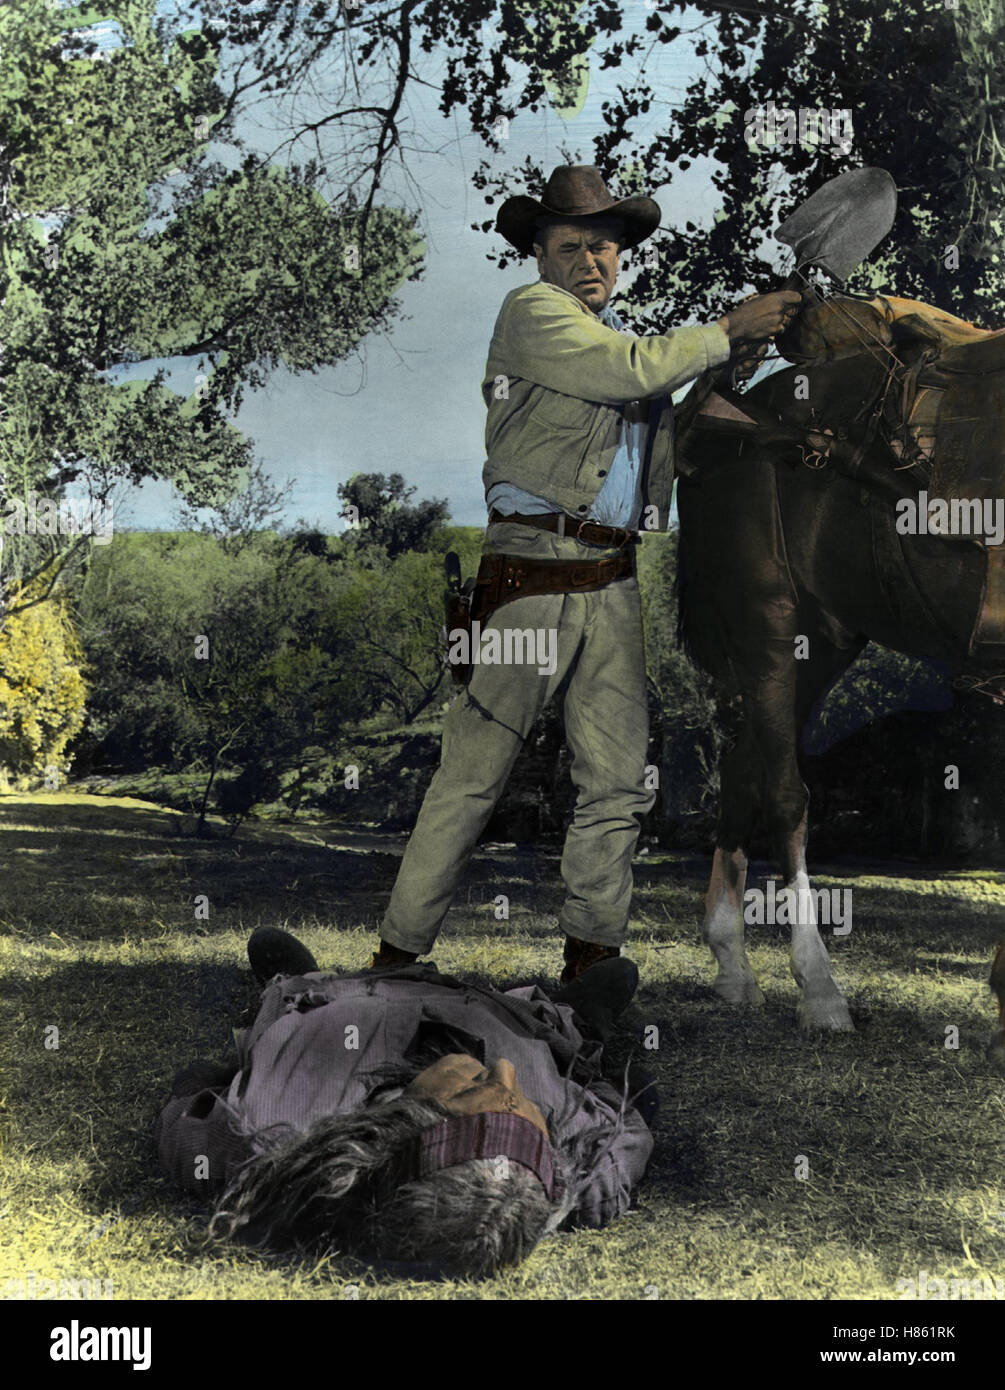 Pulver und Blei, (HEAVEN WITH A GUN) USA 1968, Regie: Lee H. Katzin, GLENN FORD, Stichwort: Cowboy, Indianer, Leiche Stock Photo